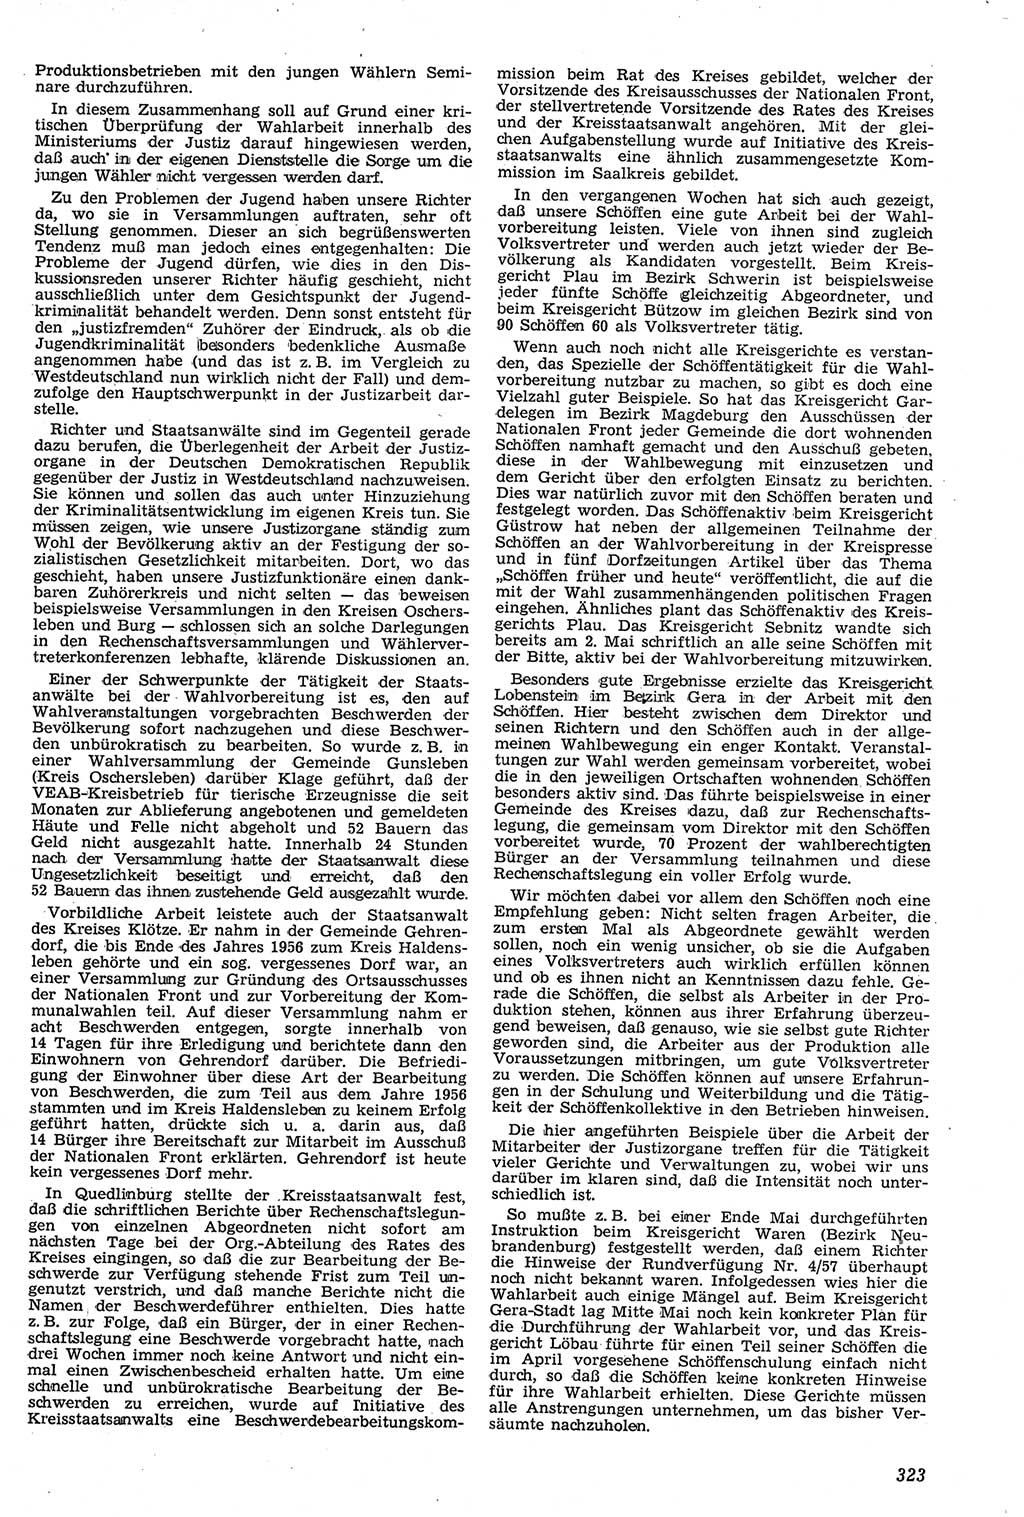 Neue Justiz (NJ), Zeitschrift für Recht und Rechtswissenschaft [Deutsche Demokratische Republik (DDR)], 11. Jahrgang 1957, Seite 323 (NJ DDR 1957, S. 323)